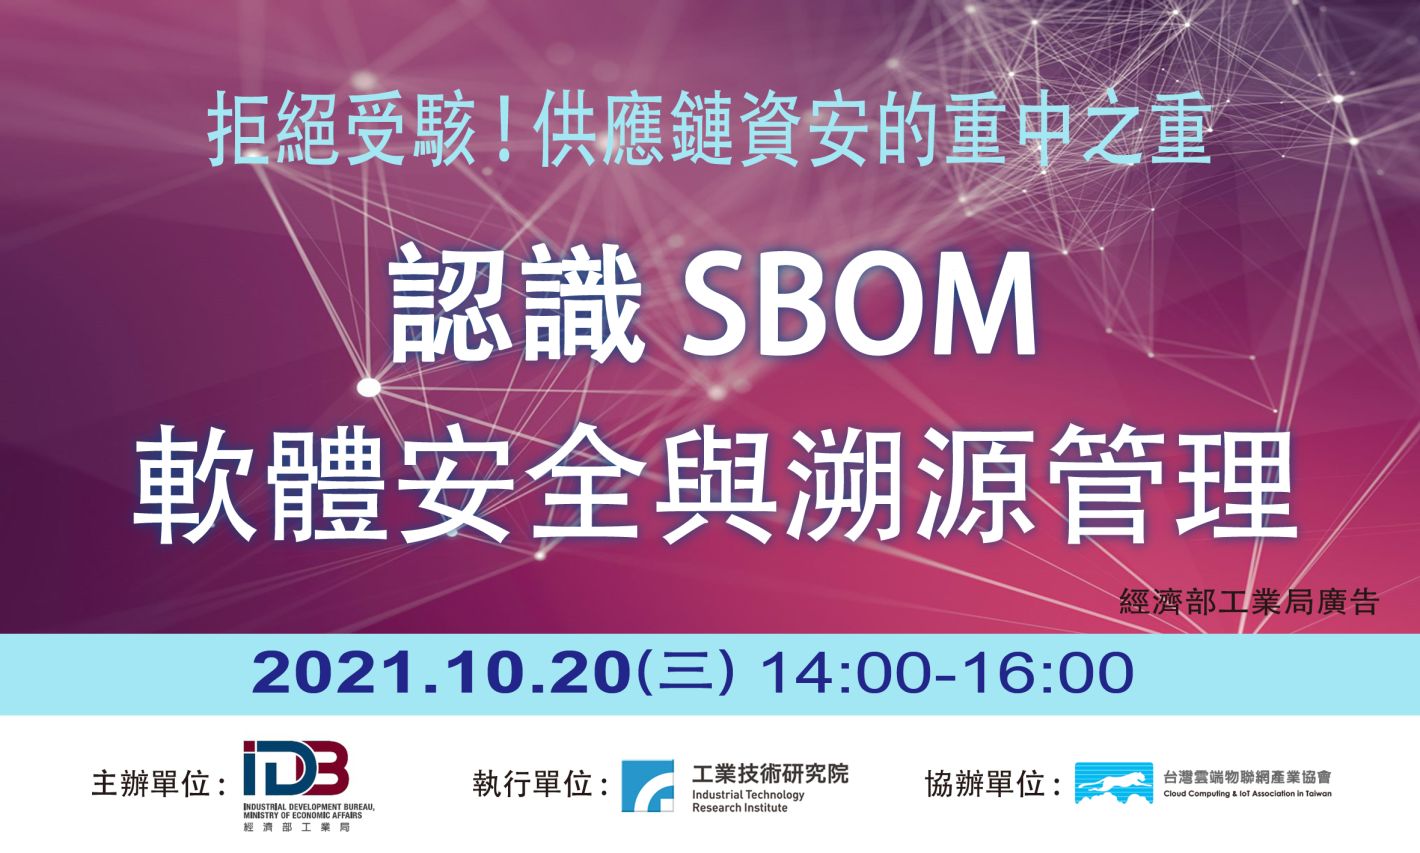 拒絕受駭！供應鏈資安的重中之重 認識SBOM軟體安全與溯源管理